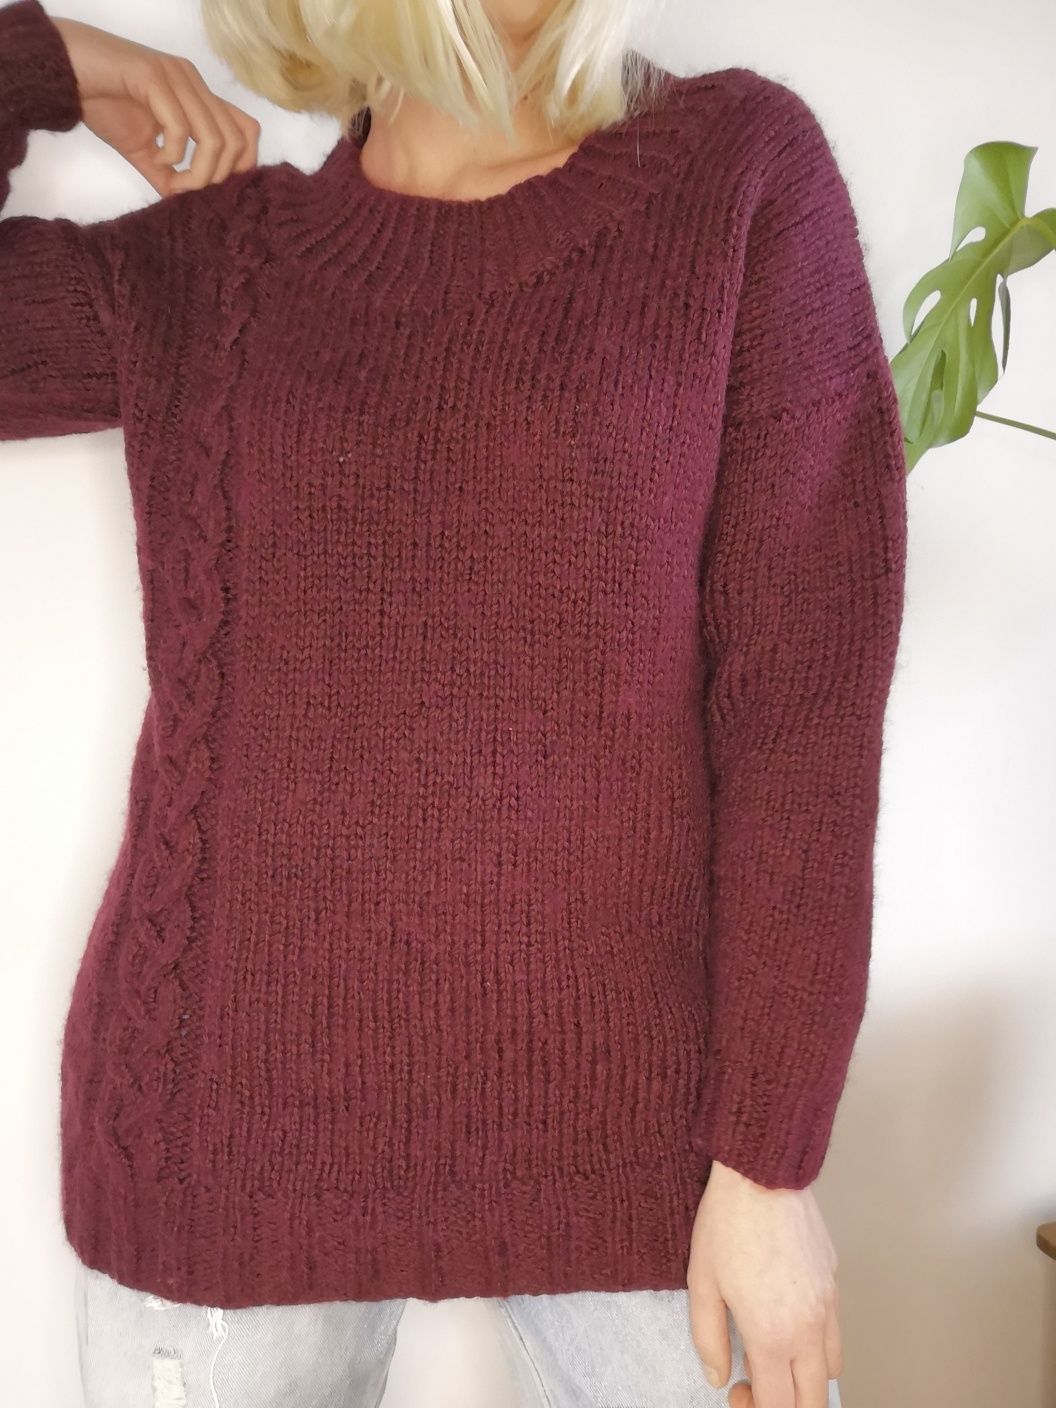 Gruby bordowy wełniany sweter oversize warkocze wełna moher handmade